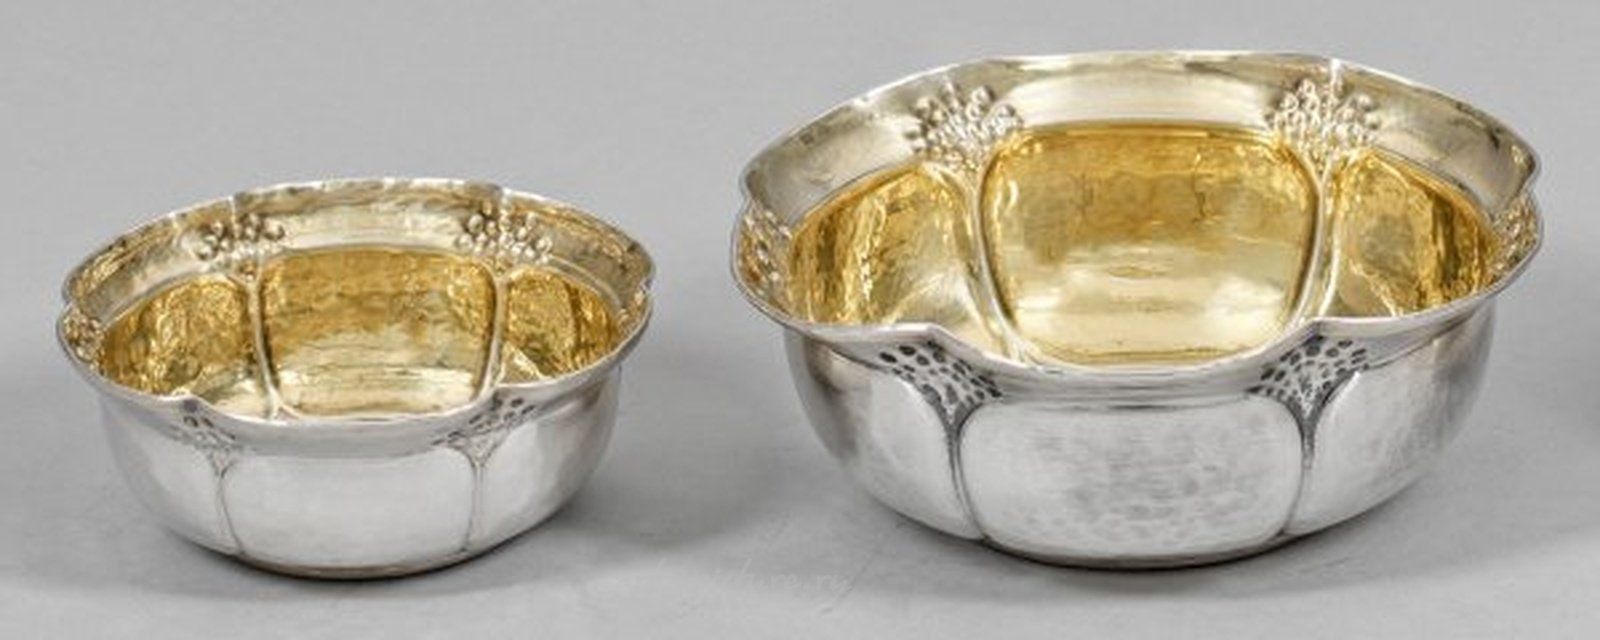 Декоративные серебряные чаши из Италии, первая половина 20-го века